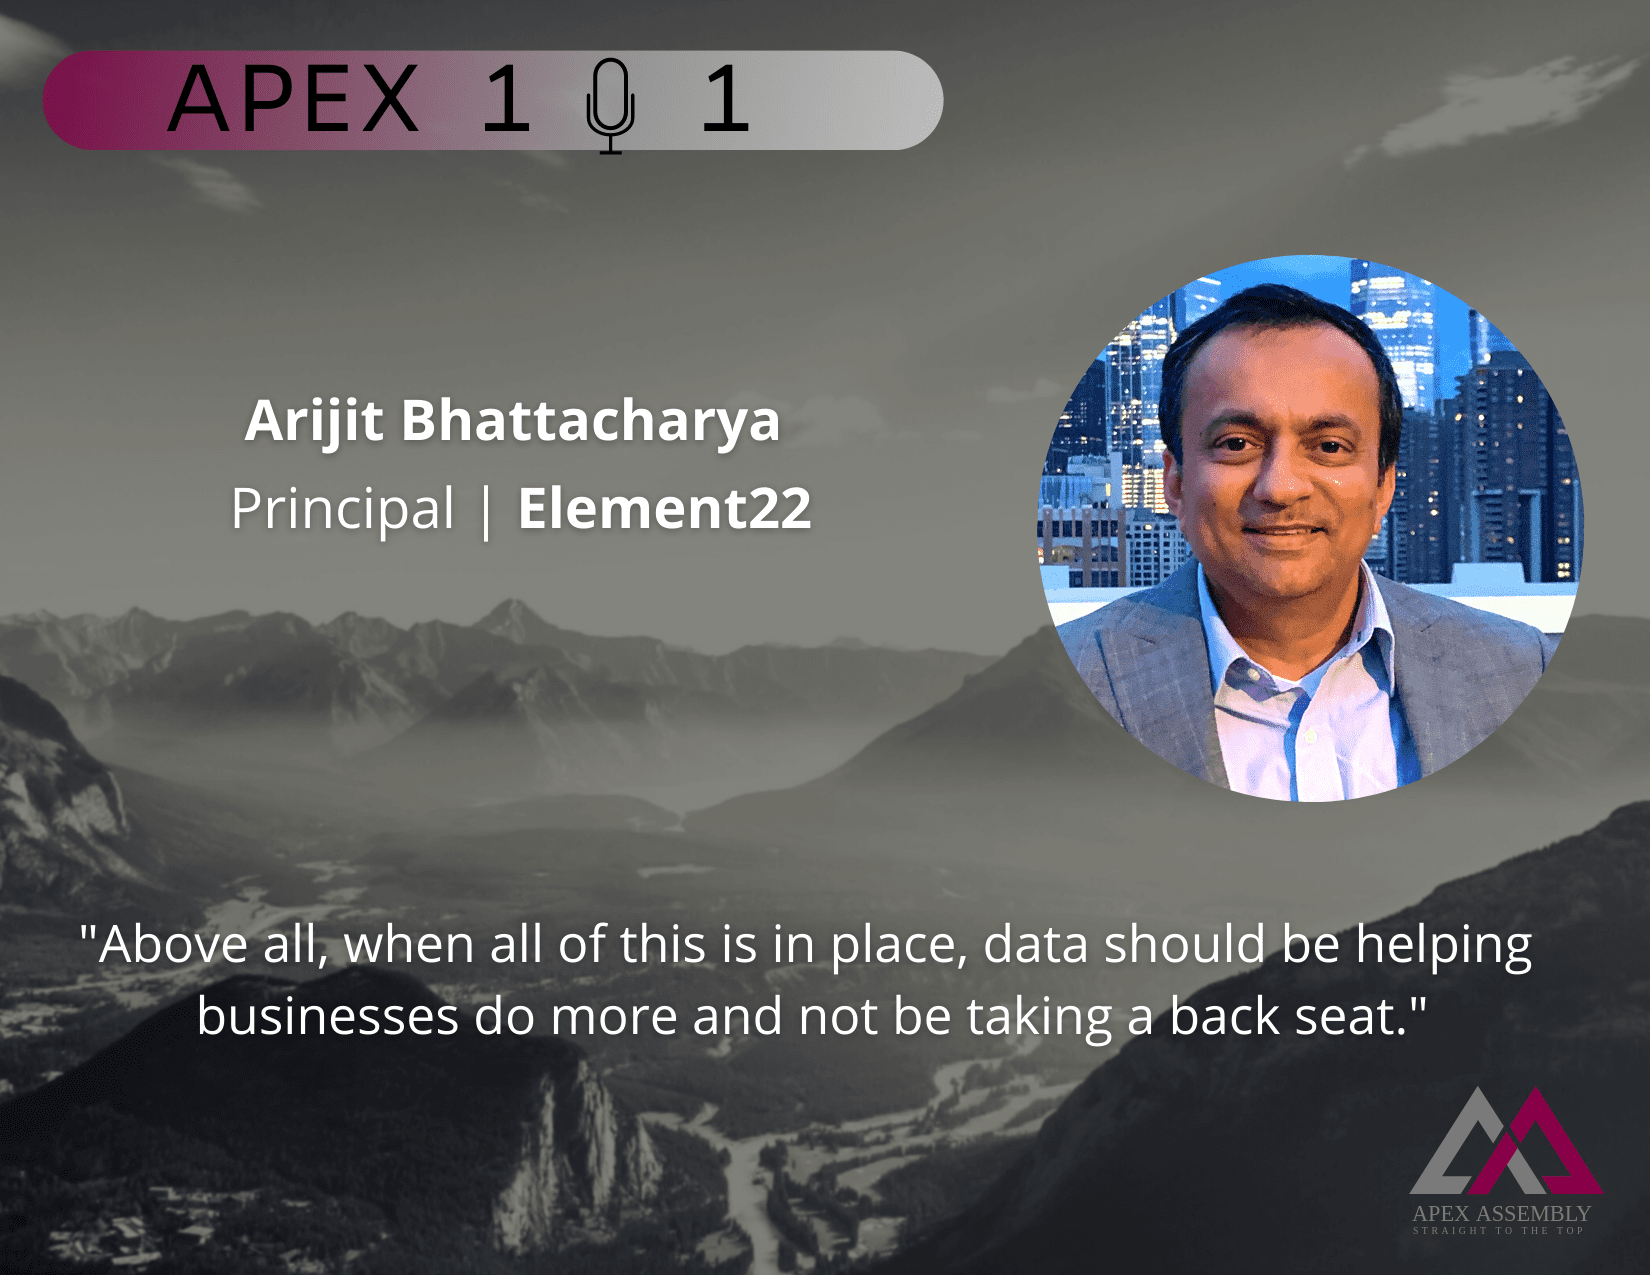 Trusting The Data with Arijit Bhattacharya